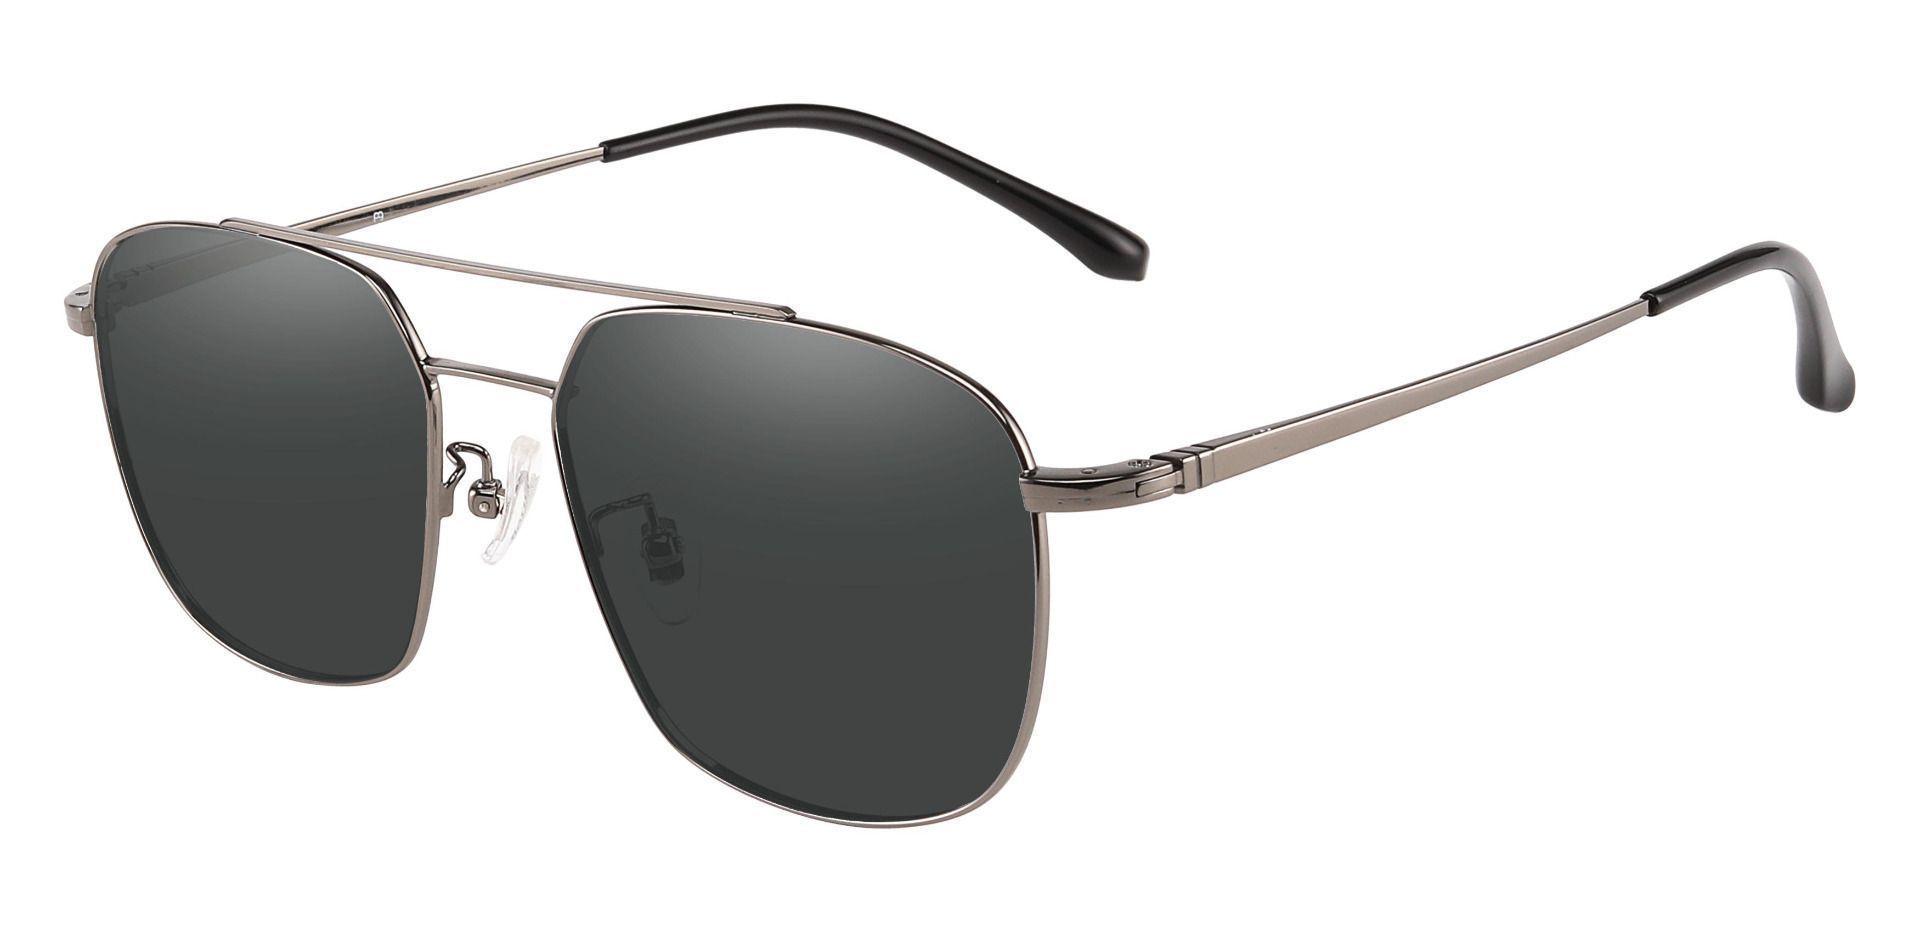 Trevor Aviator Progressive Sunglasses - Gray Frame With Gray Lenses